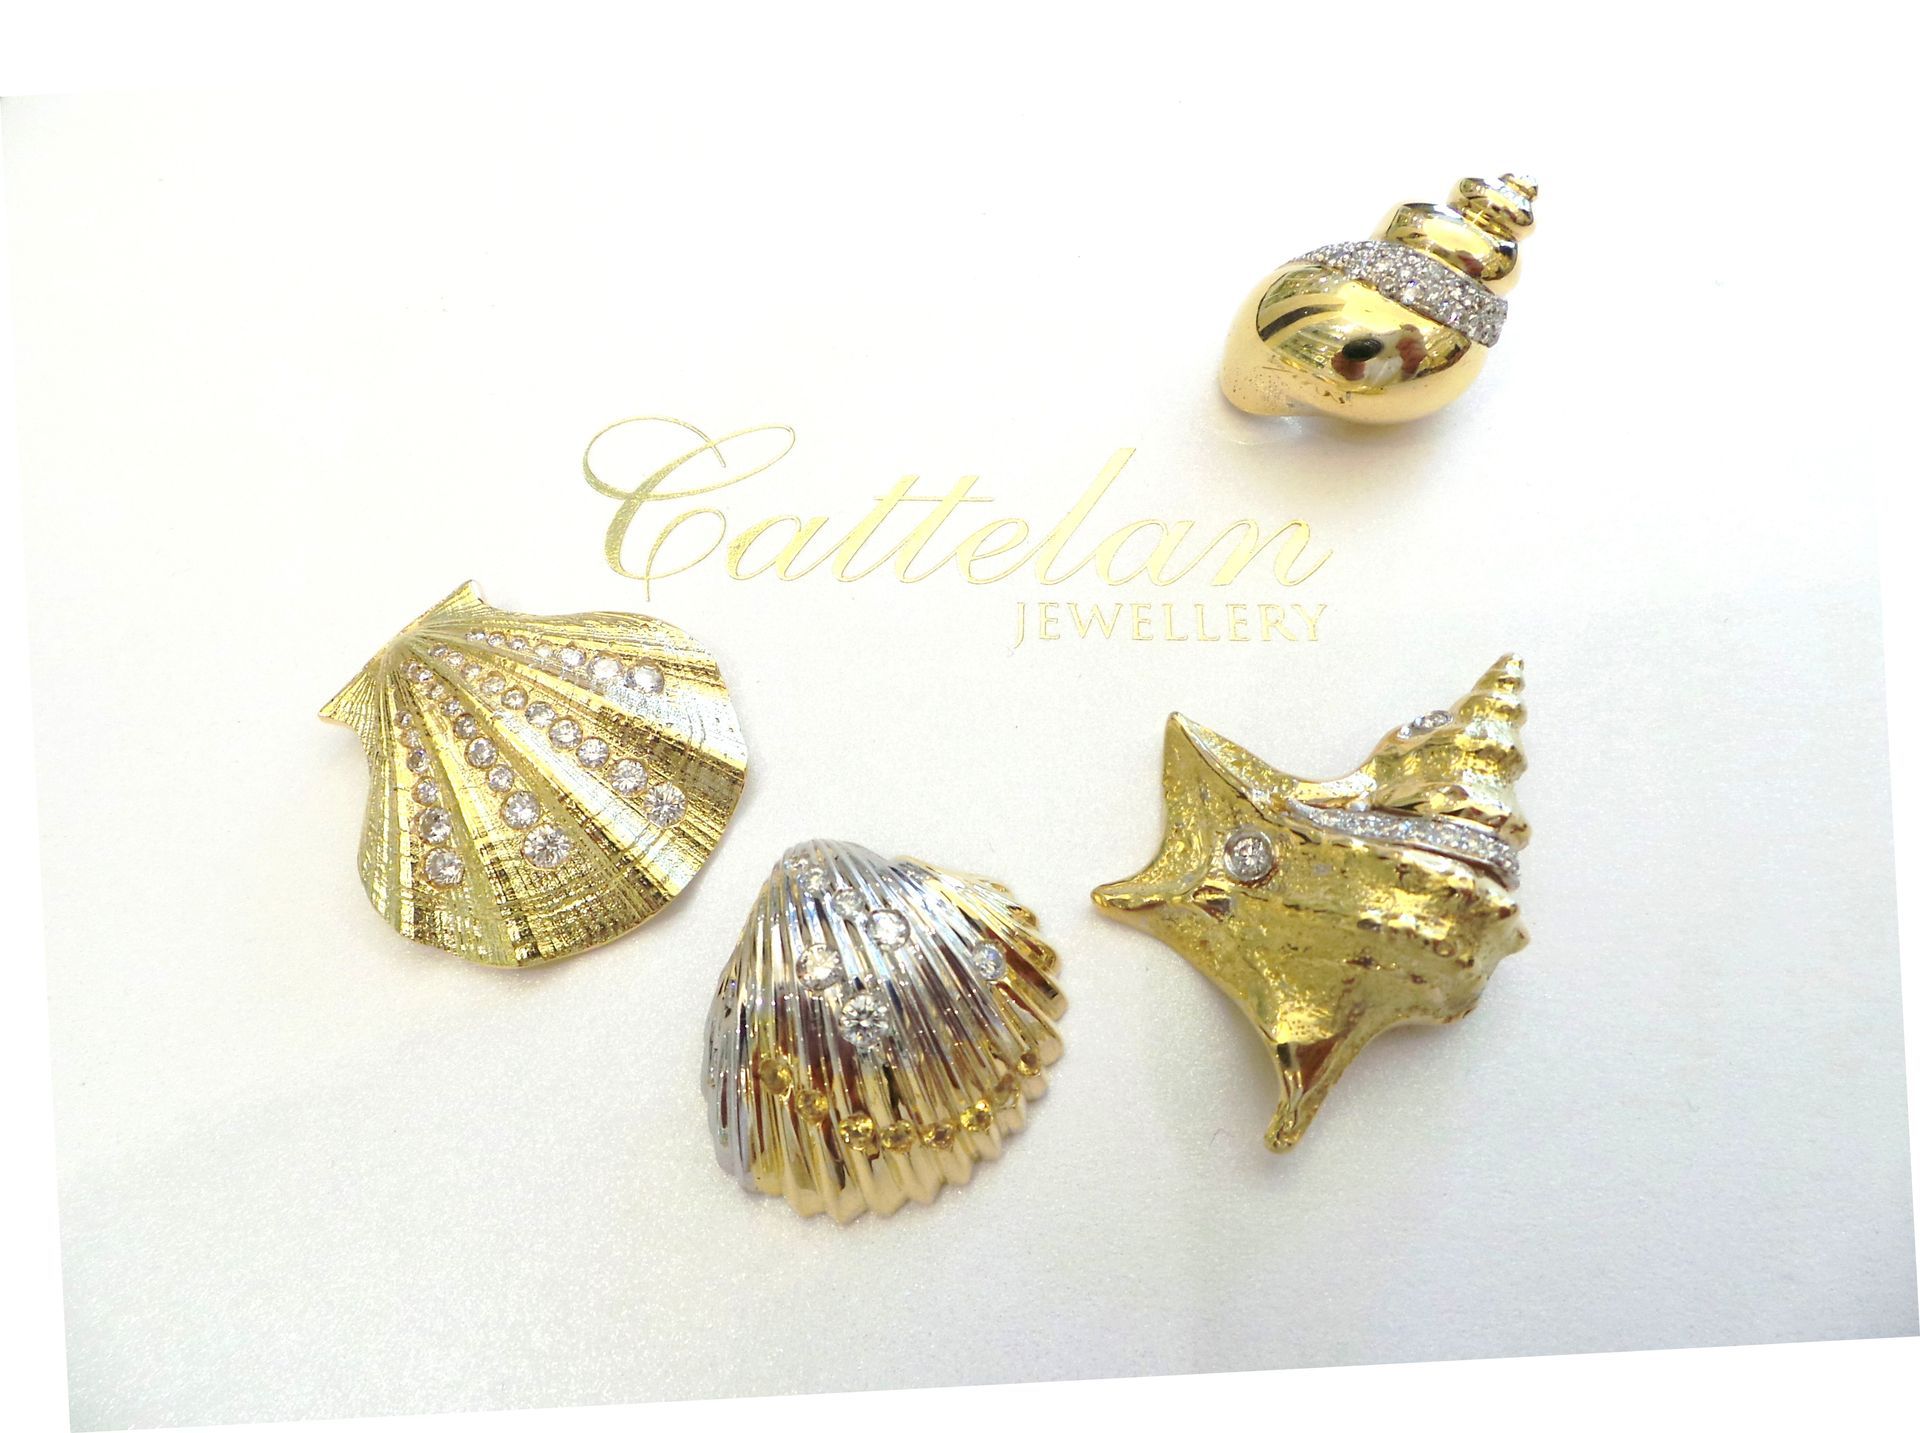 Cattelan - conchiglie in oro 750 e diamanti